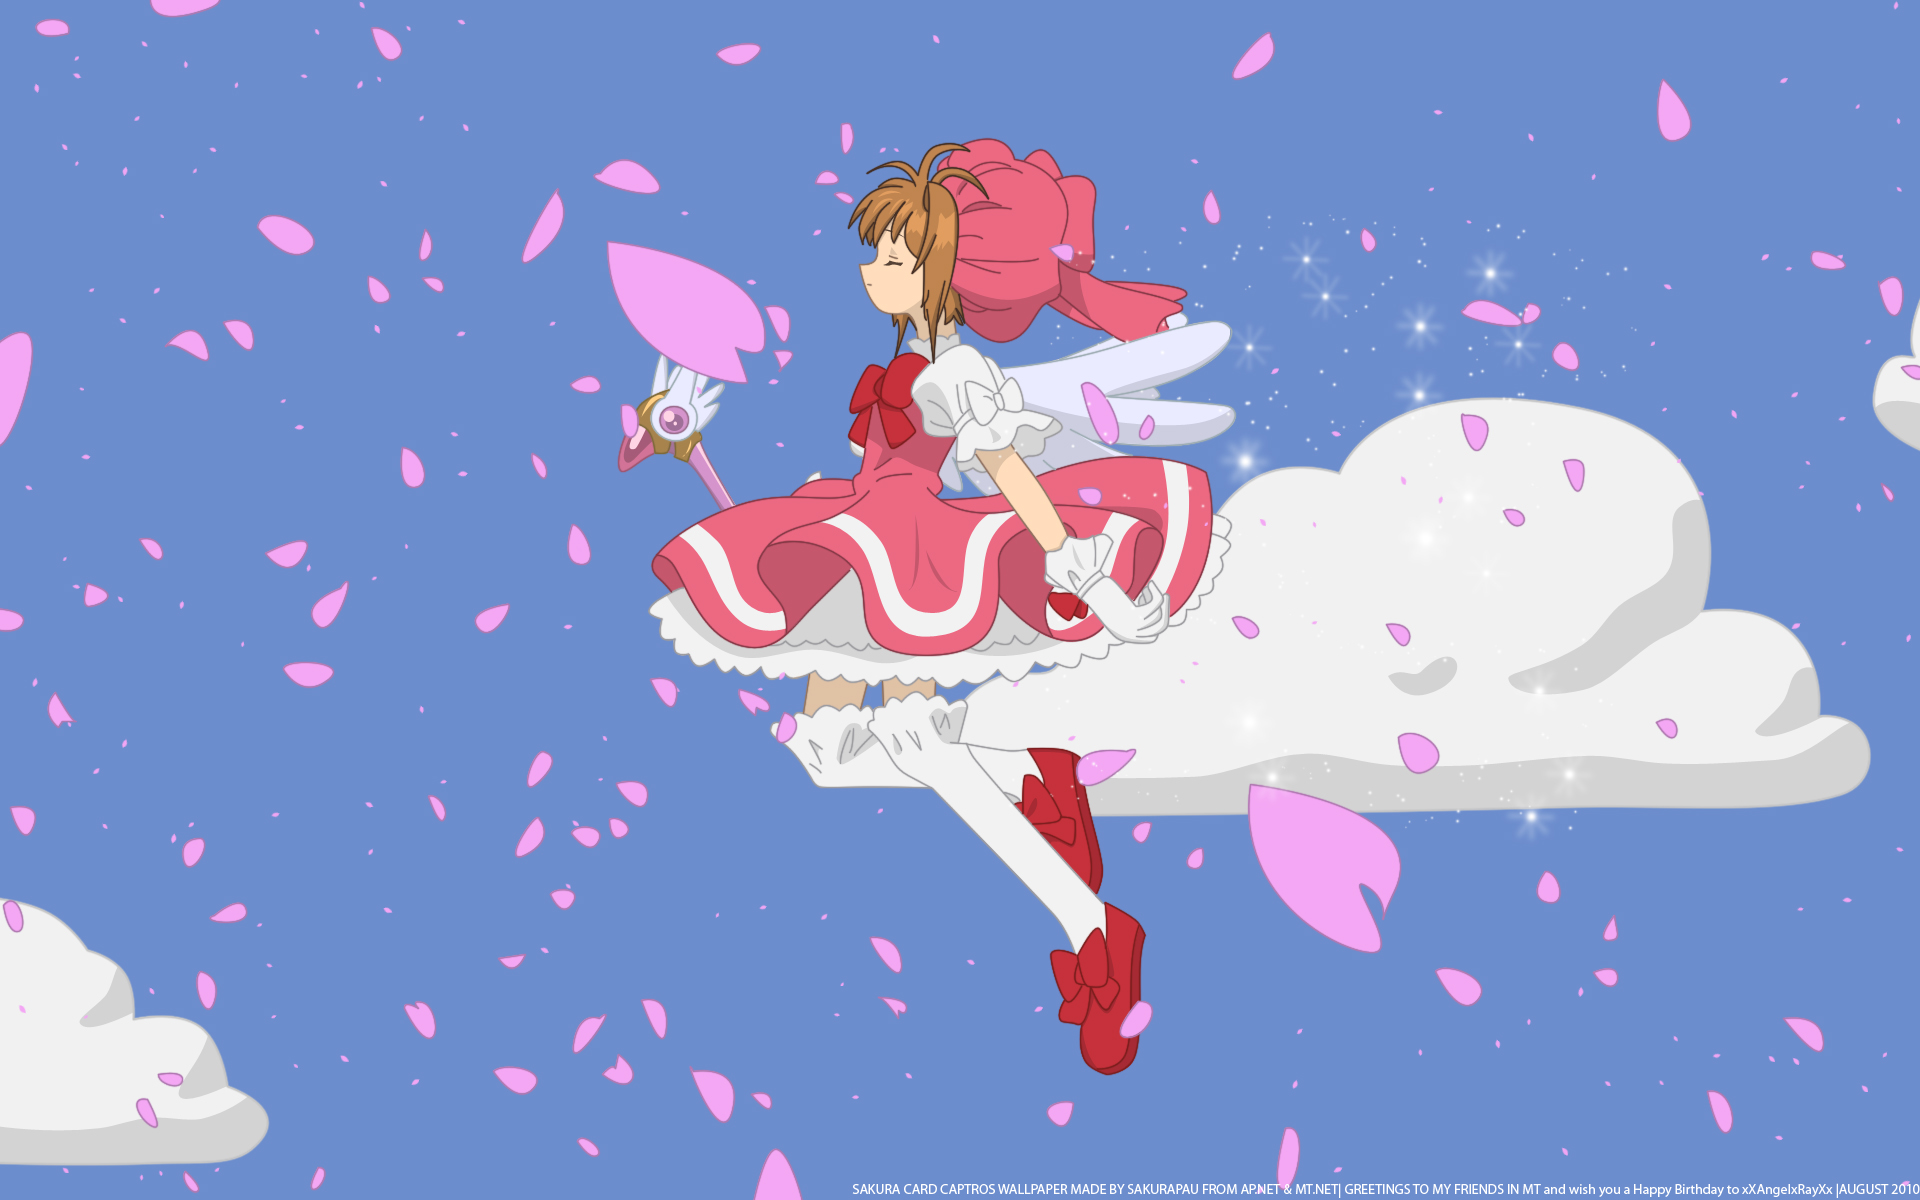 cardcaptor sakura, anime